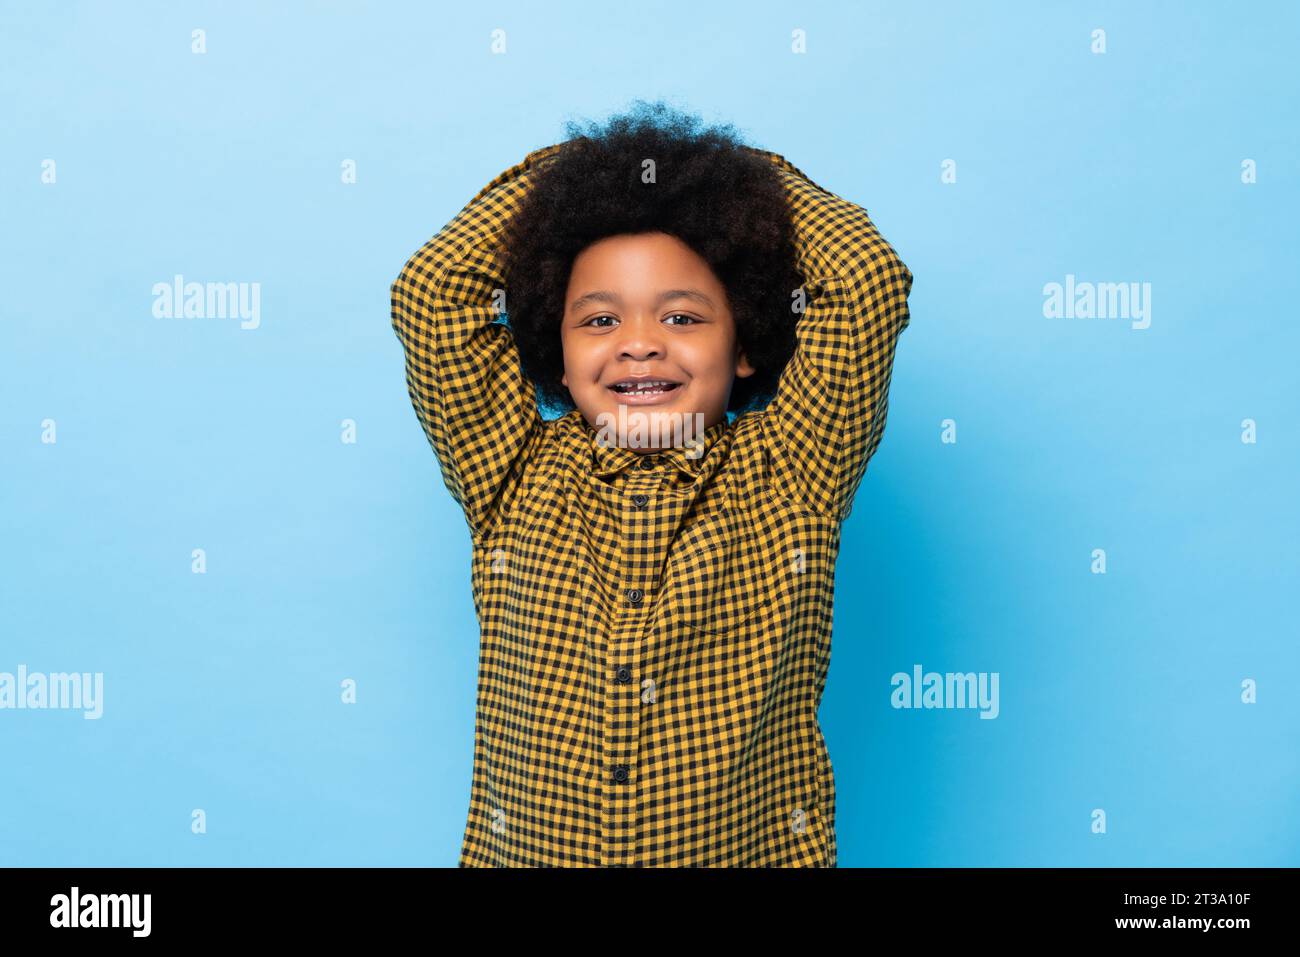 Simpatico ragazzo afro-africano che sorride con le mani sulla testa in uno studio di colore blu con sfondo isolato Foto Stock